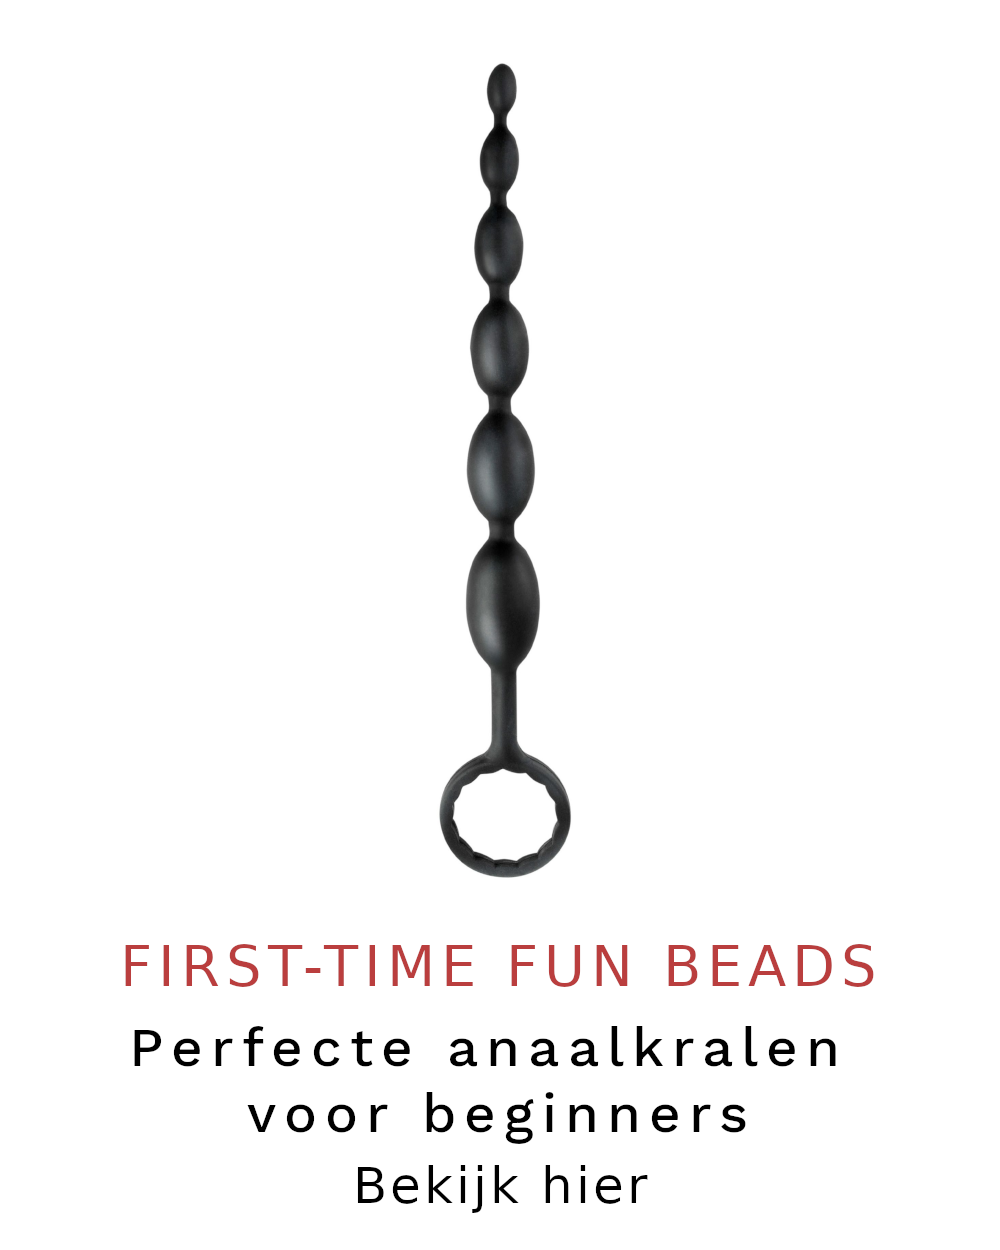 First-time fun beads, anaalkralen voor beginners